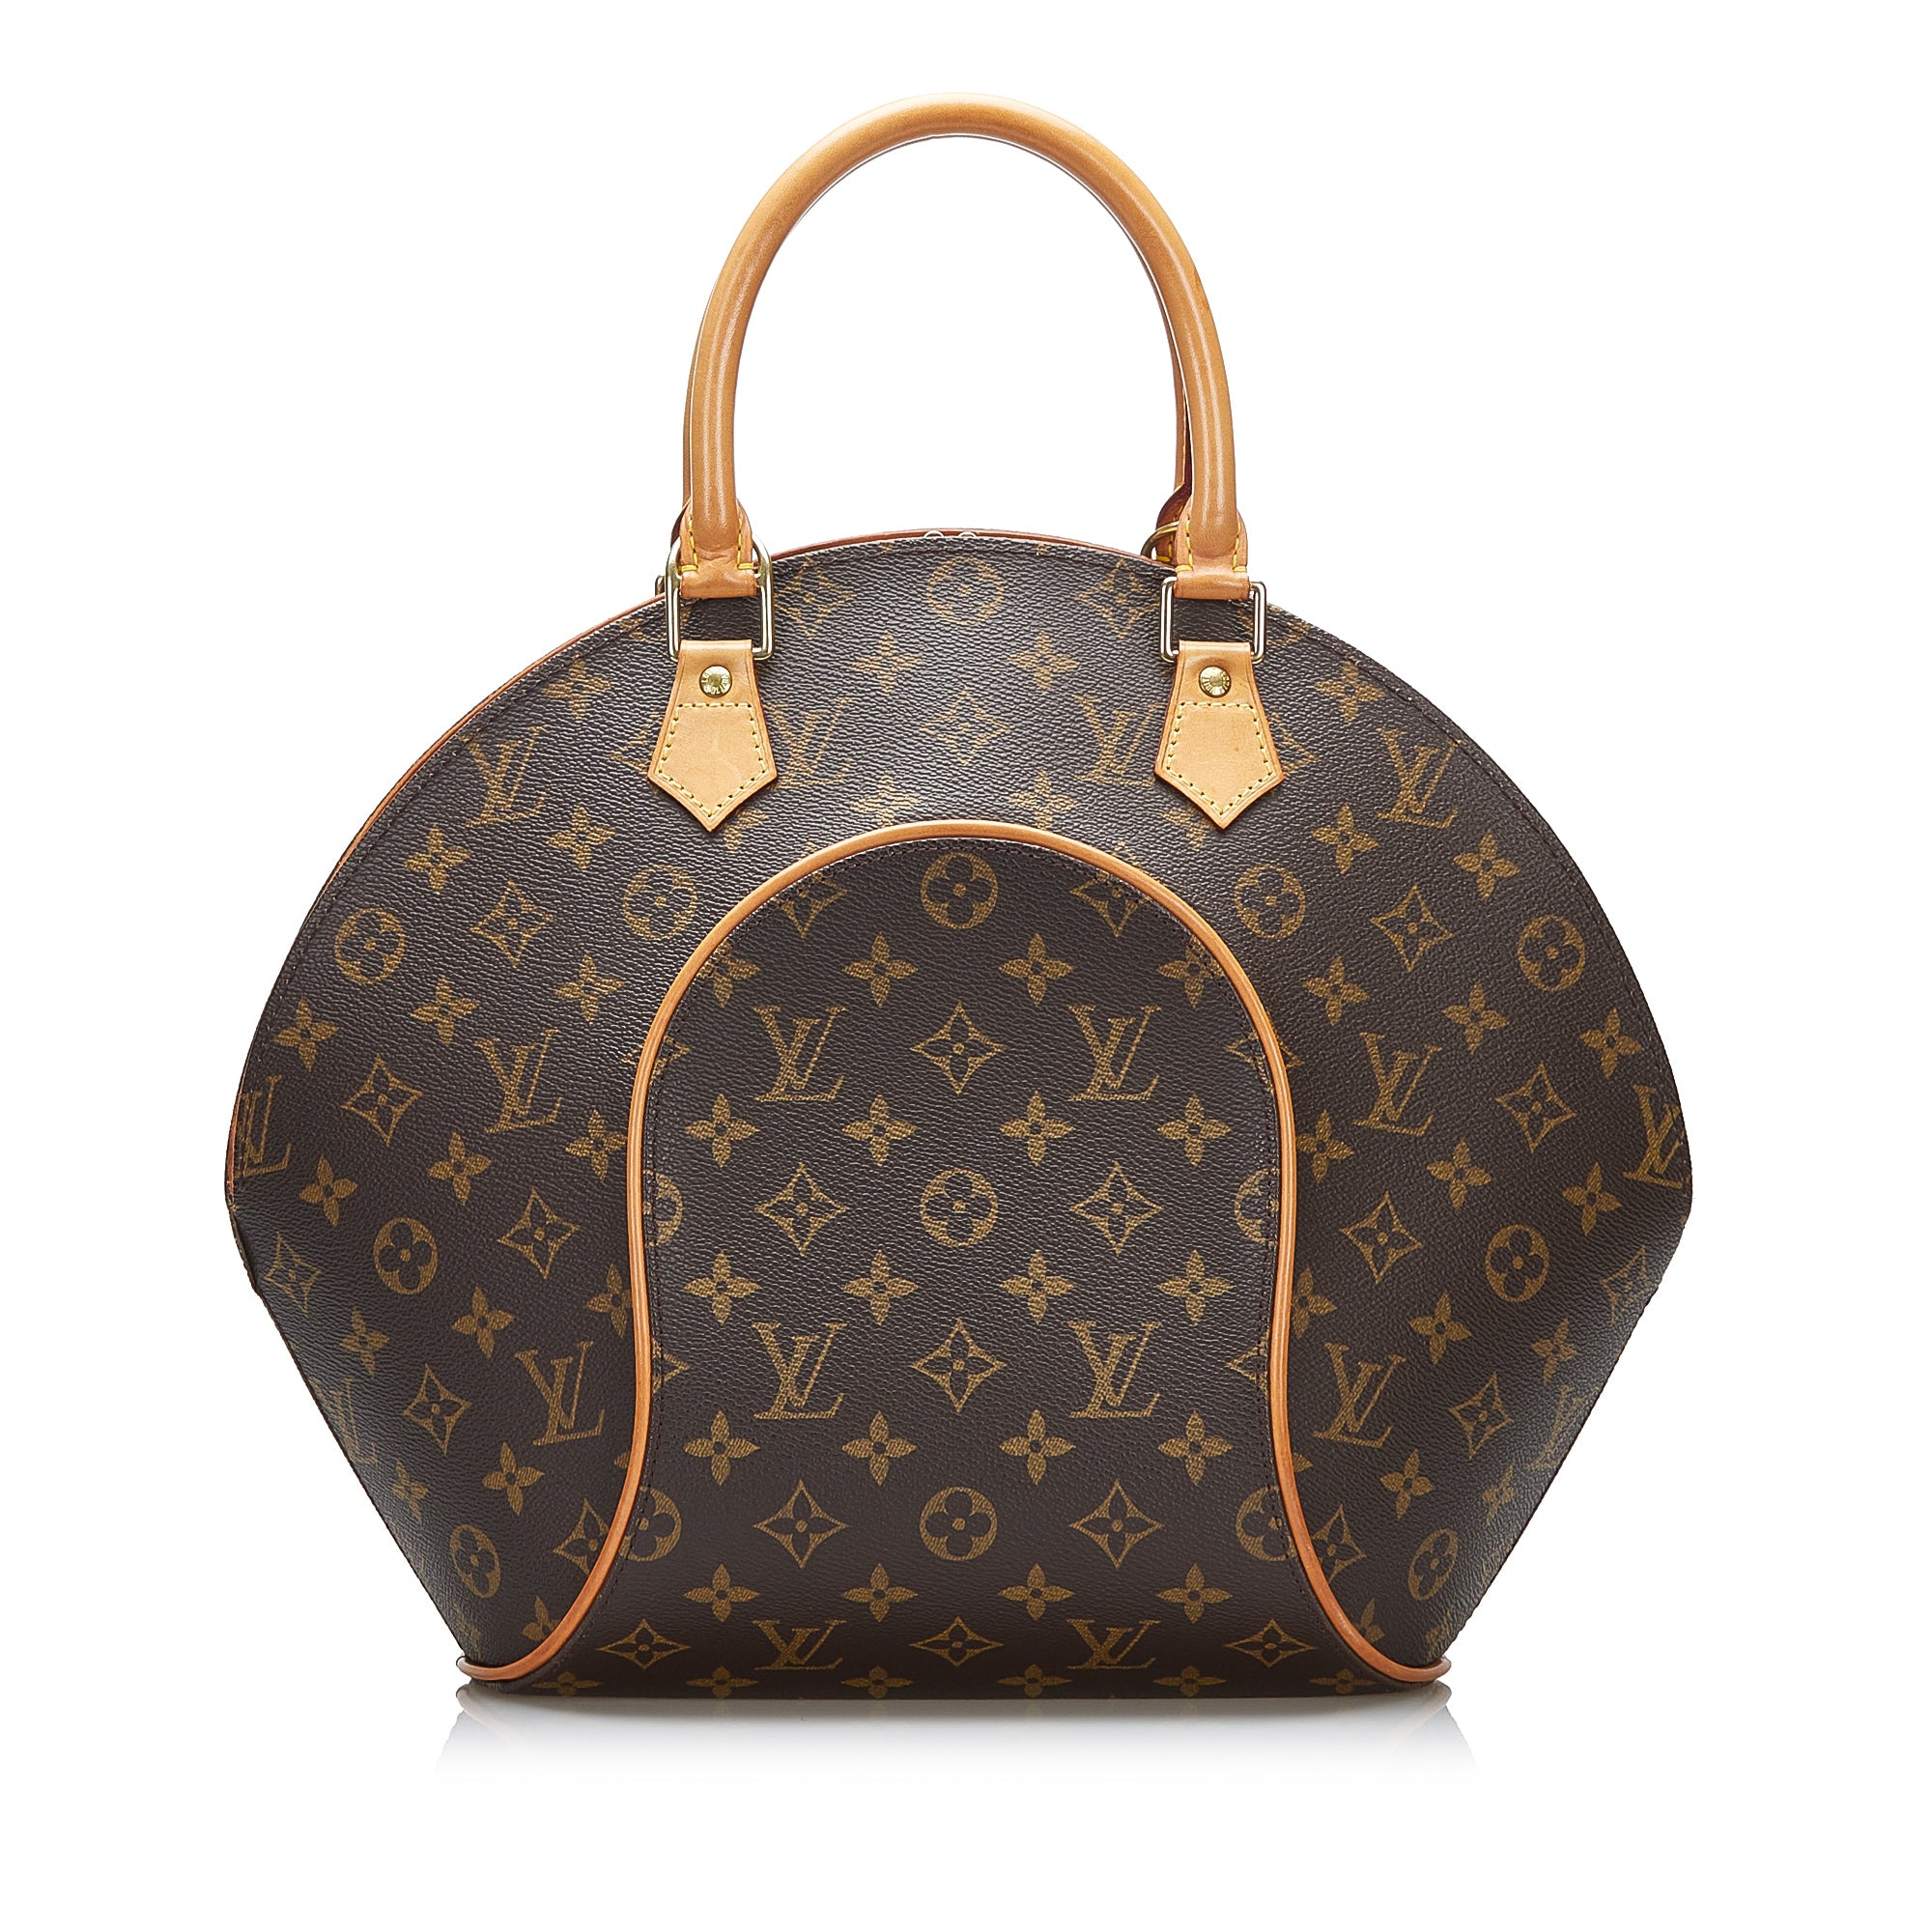 Louis Vuitton Vachetta Leather Handbags